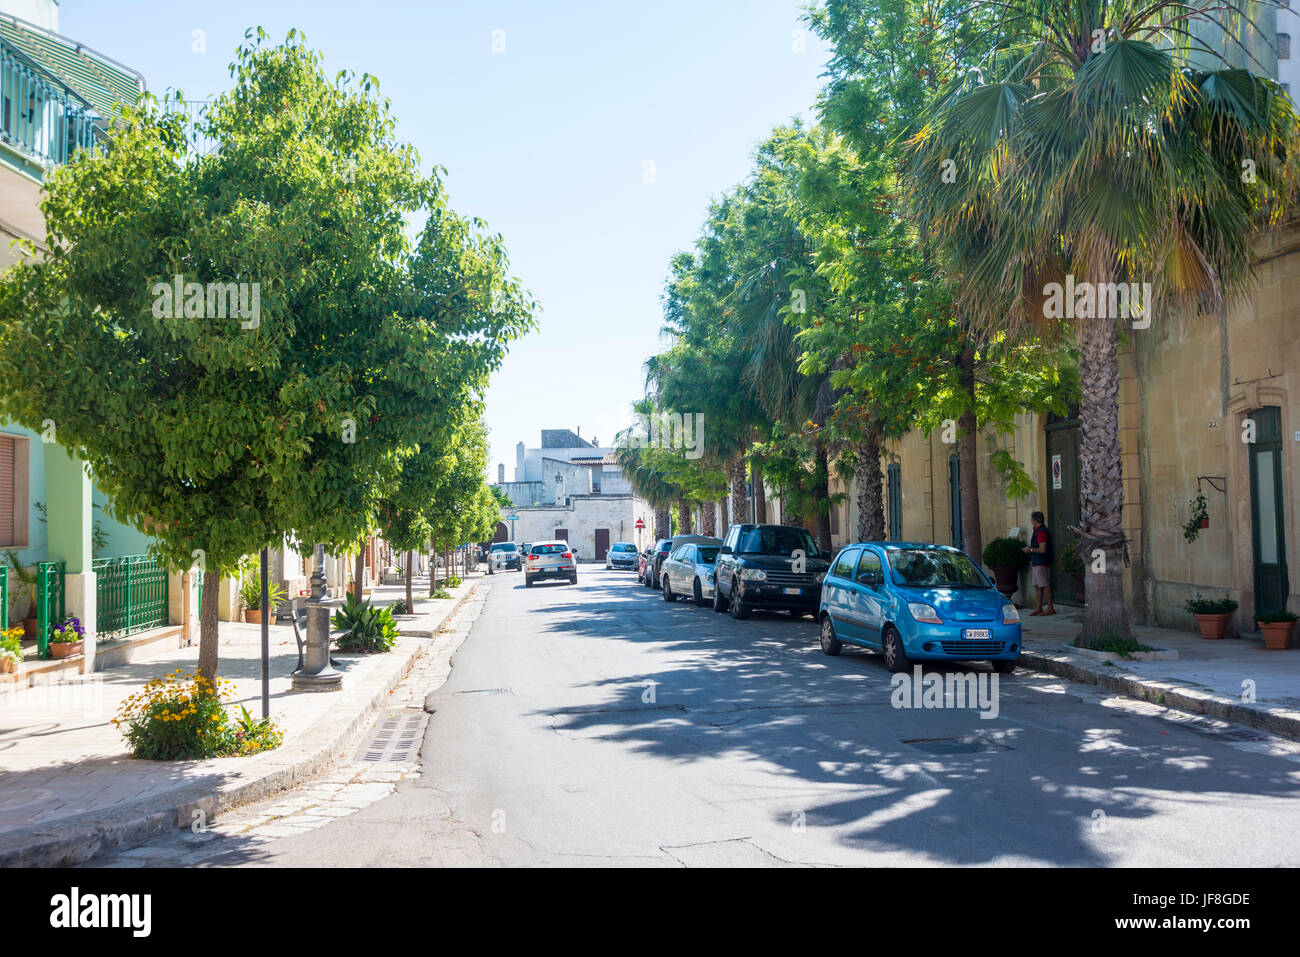 The Main Street in Specchia Gallone – a small village in the Province of Lecce, Puglia, Italy Stock Photo